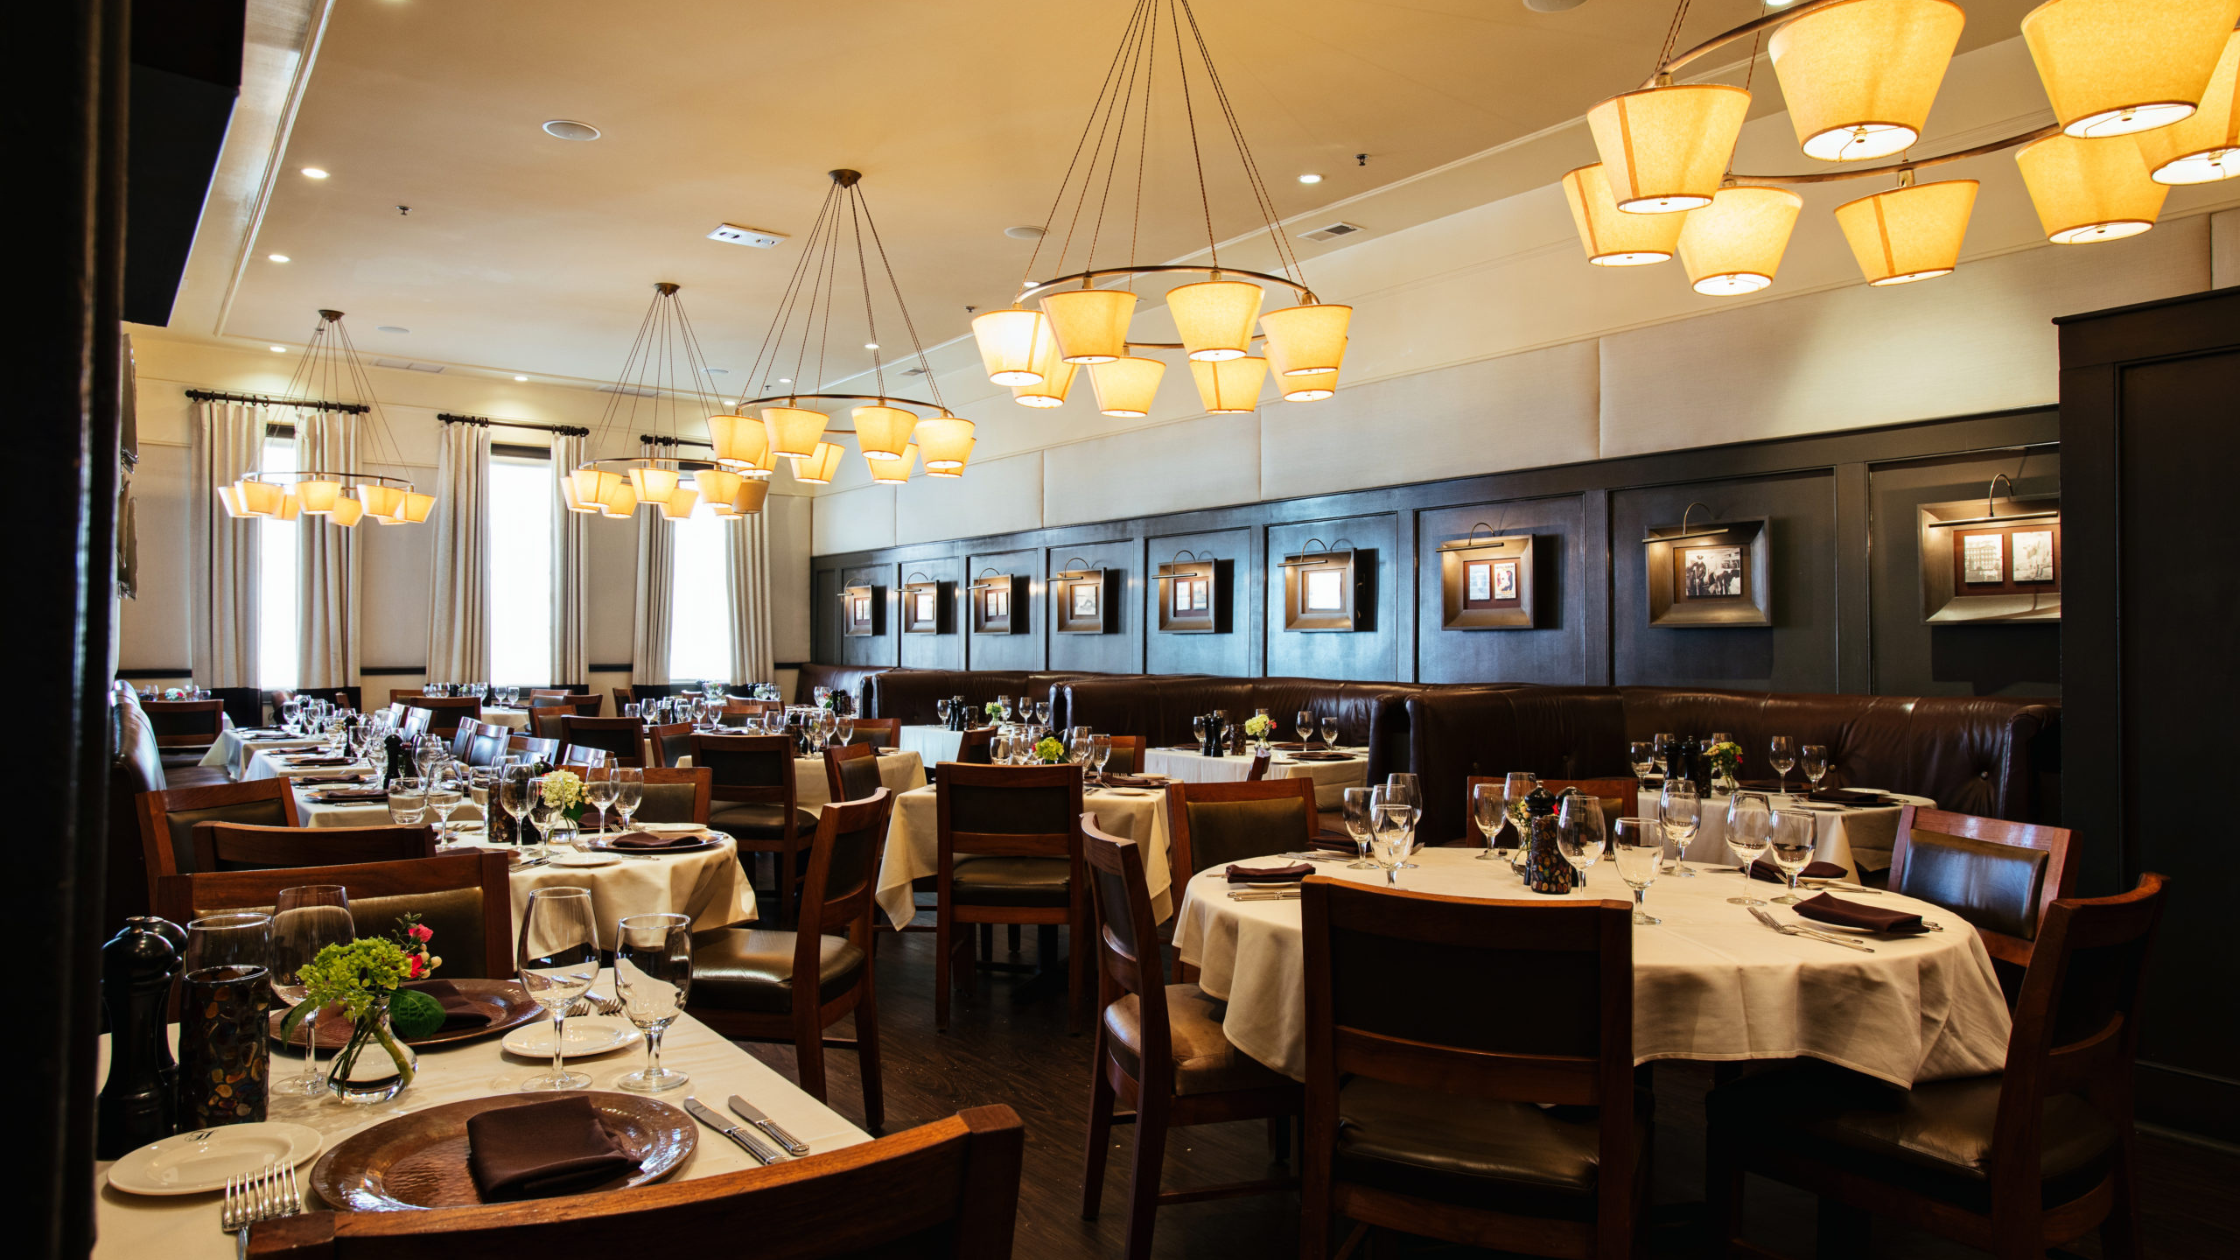 Halls Chophouse - Top 10 Restaurants in Charleston, SC